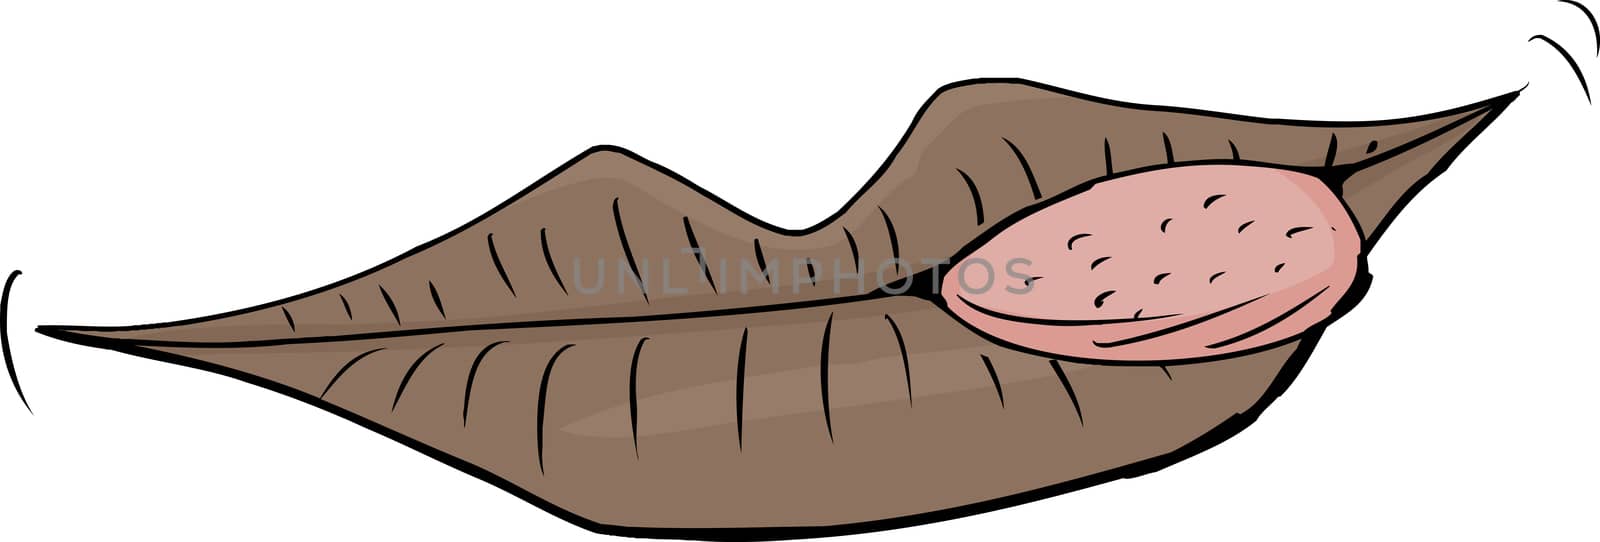 Isolated Licking Lips Cartoon by TheBlackRhino